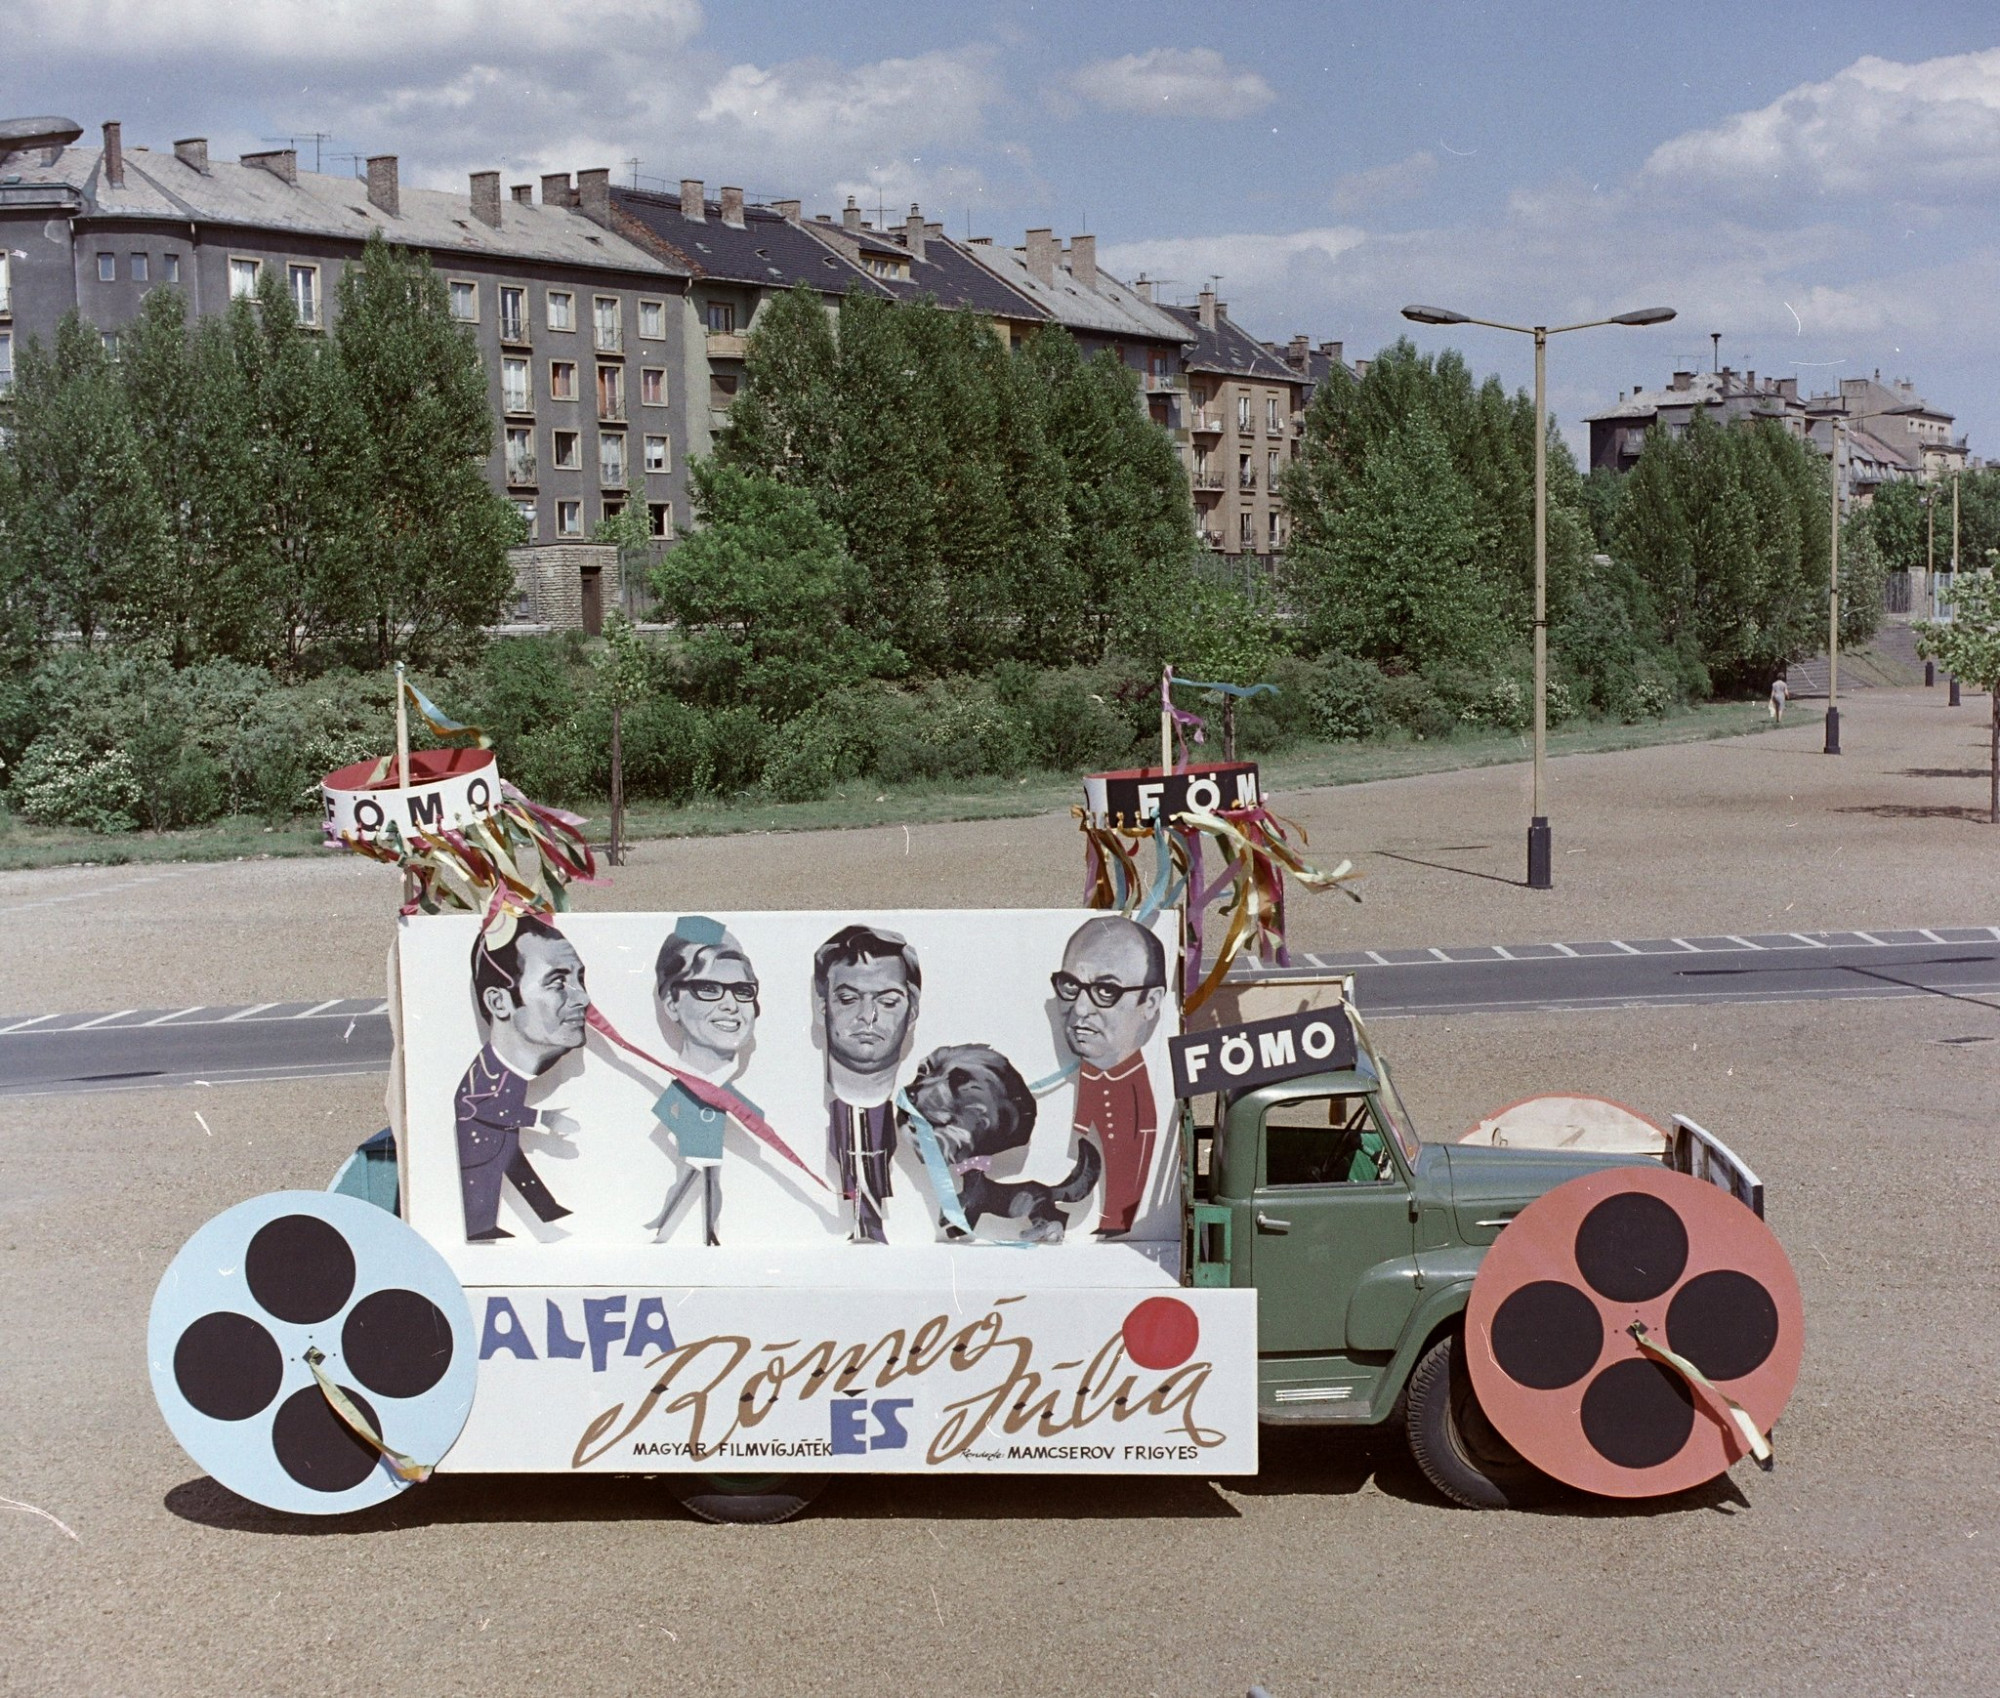 FőMo hirdetés egy Színészek–Újságírók Rangadó (SZÚR) alkalmával felvonuló teherautón a Népstadion melletti területen 1969-ben, háttérben a Stefánia (Népstadion) út házsora.